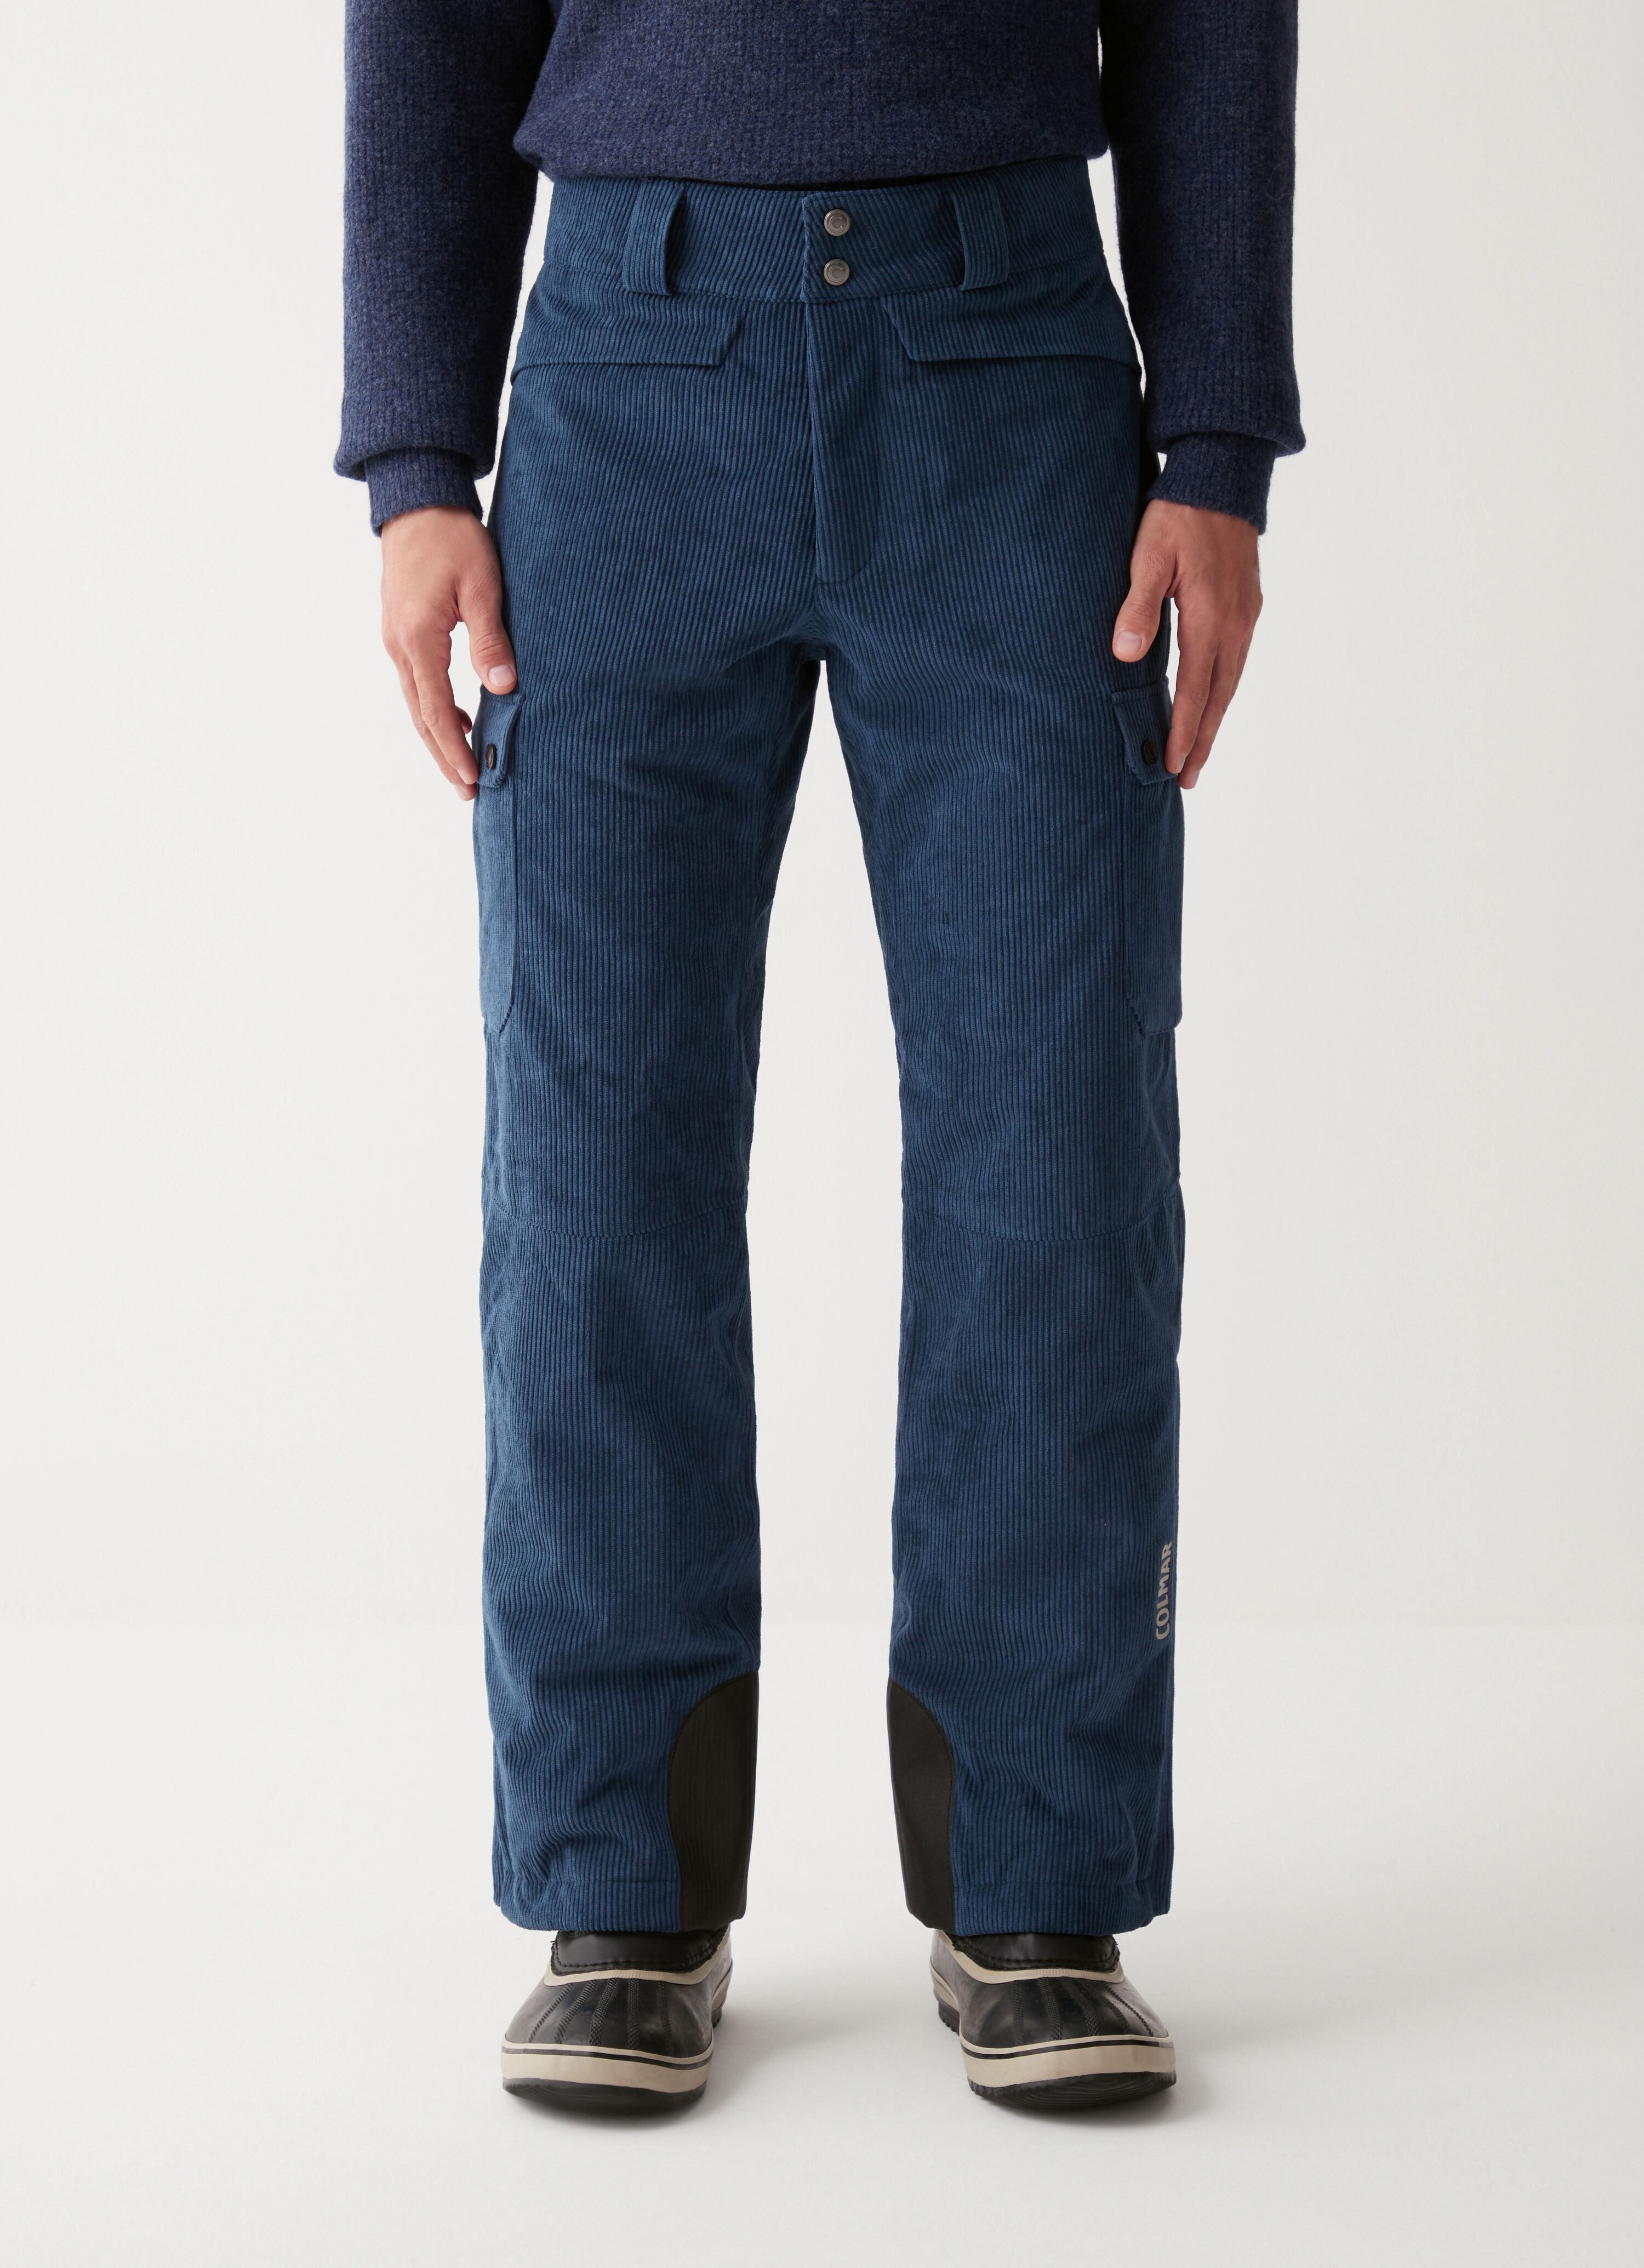 Velvet ski trousers with side pockets